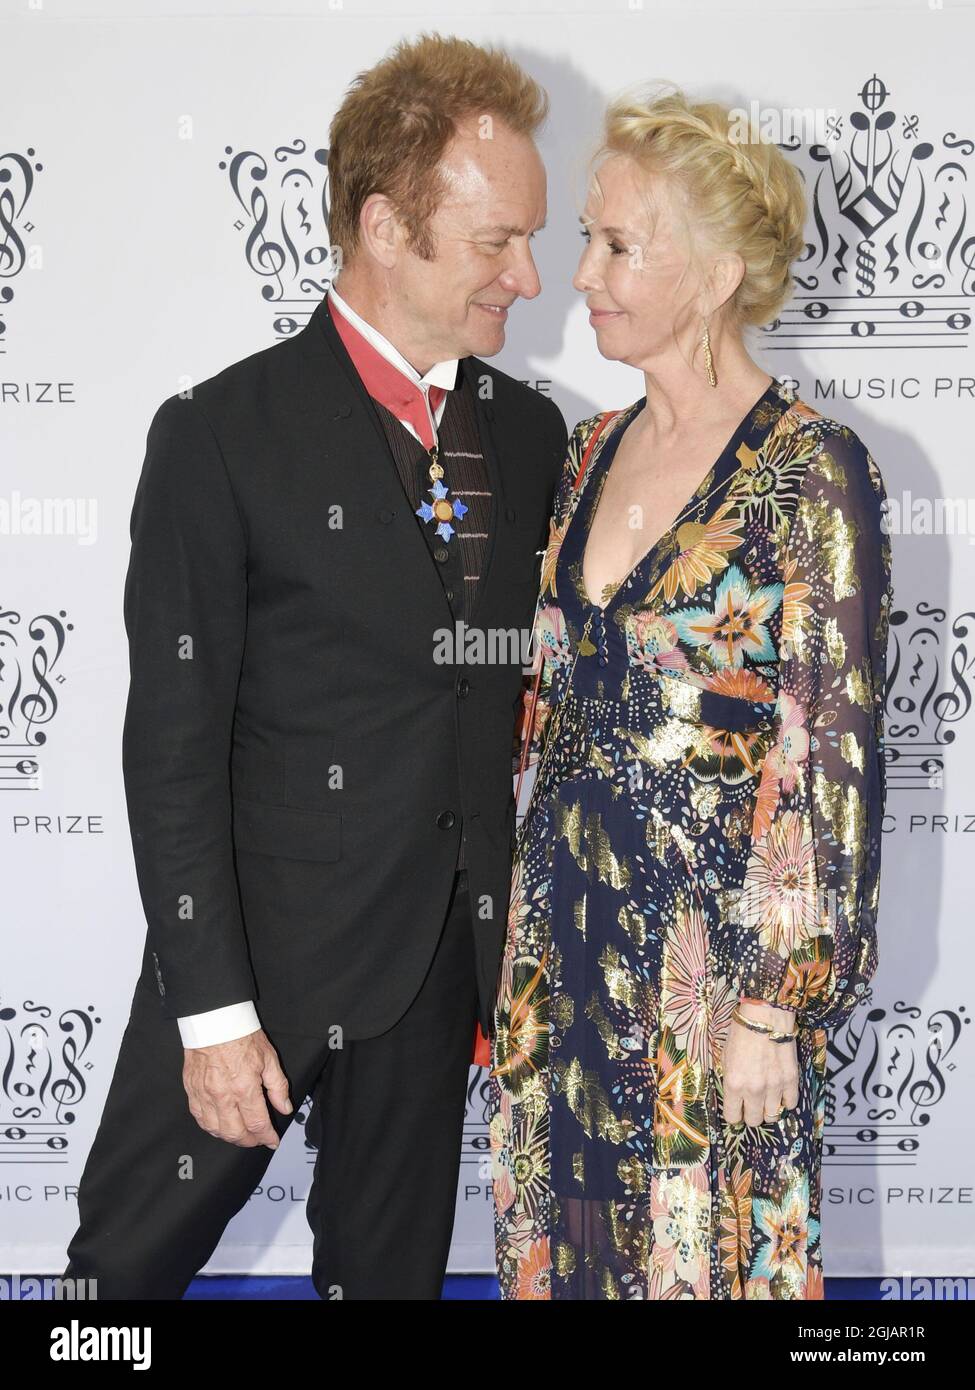 ESTOCOLMO 2017-06-15 Premio de Música Polar Sting y su esposa Trudie Styler Llegando a los Premios de Música Polar en Konserthuset, Estocolmo, Suecia, 15 de junio de 2017. Foto: Anders Wiklund / TT / KOD 10040 Foto de stock